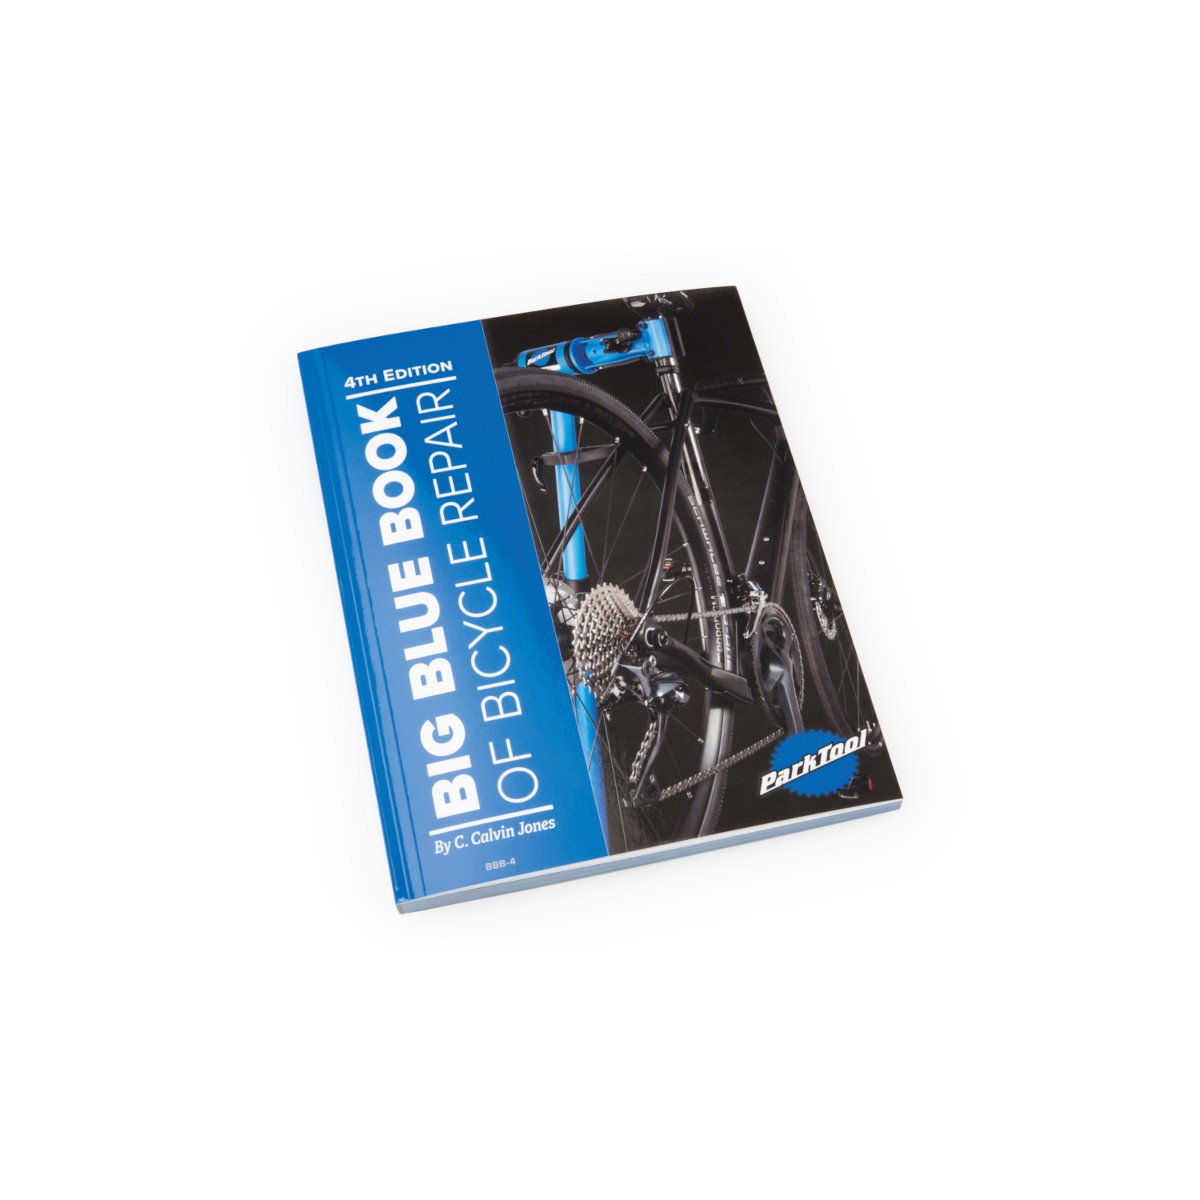 Livre d'information pour réparations de vélo (anglais)